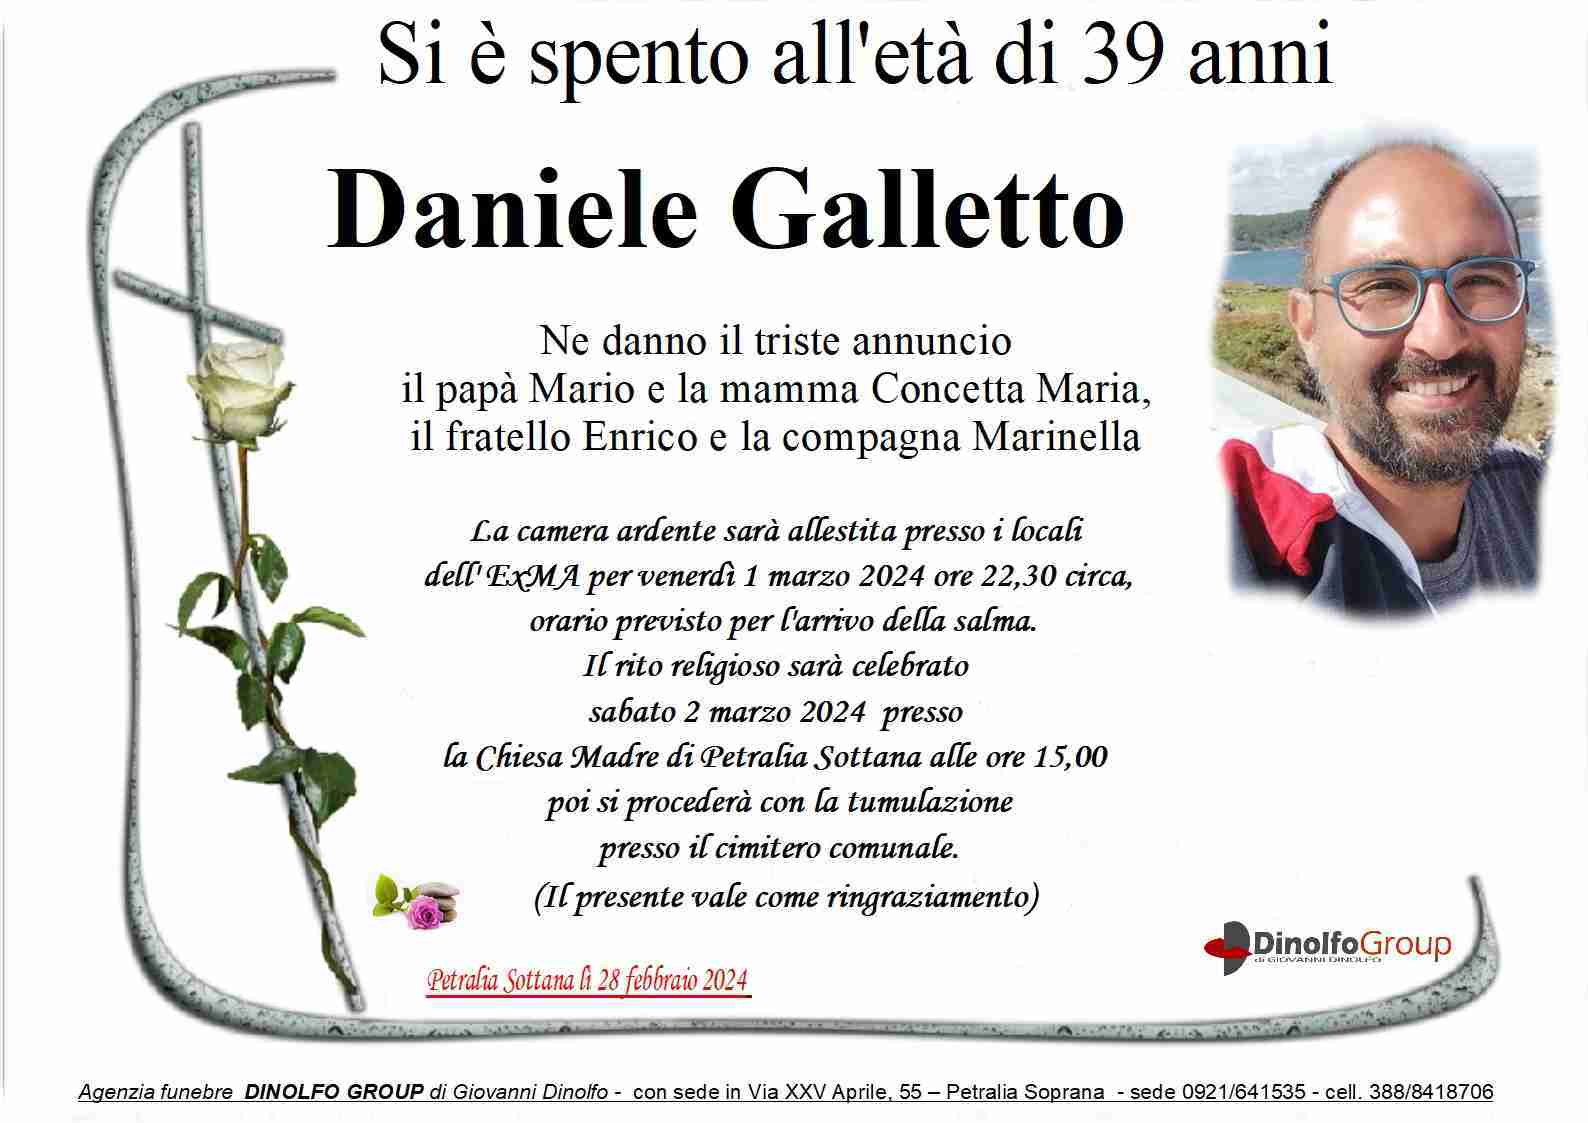 Daniele Galletto